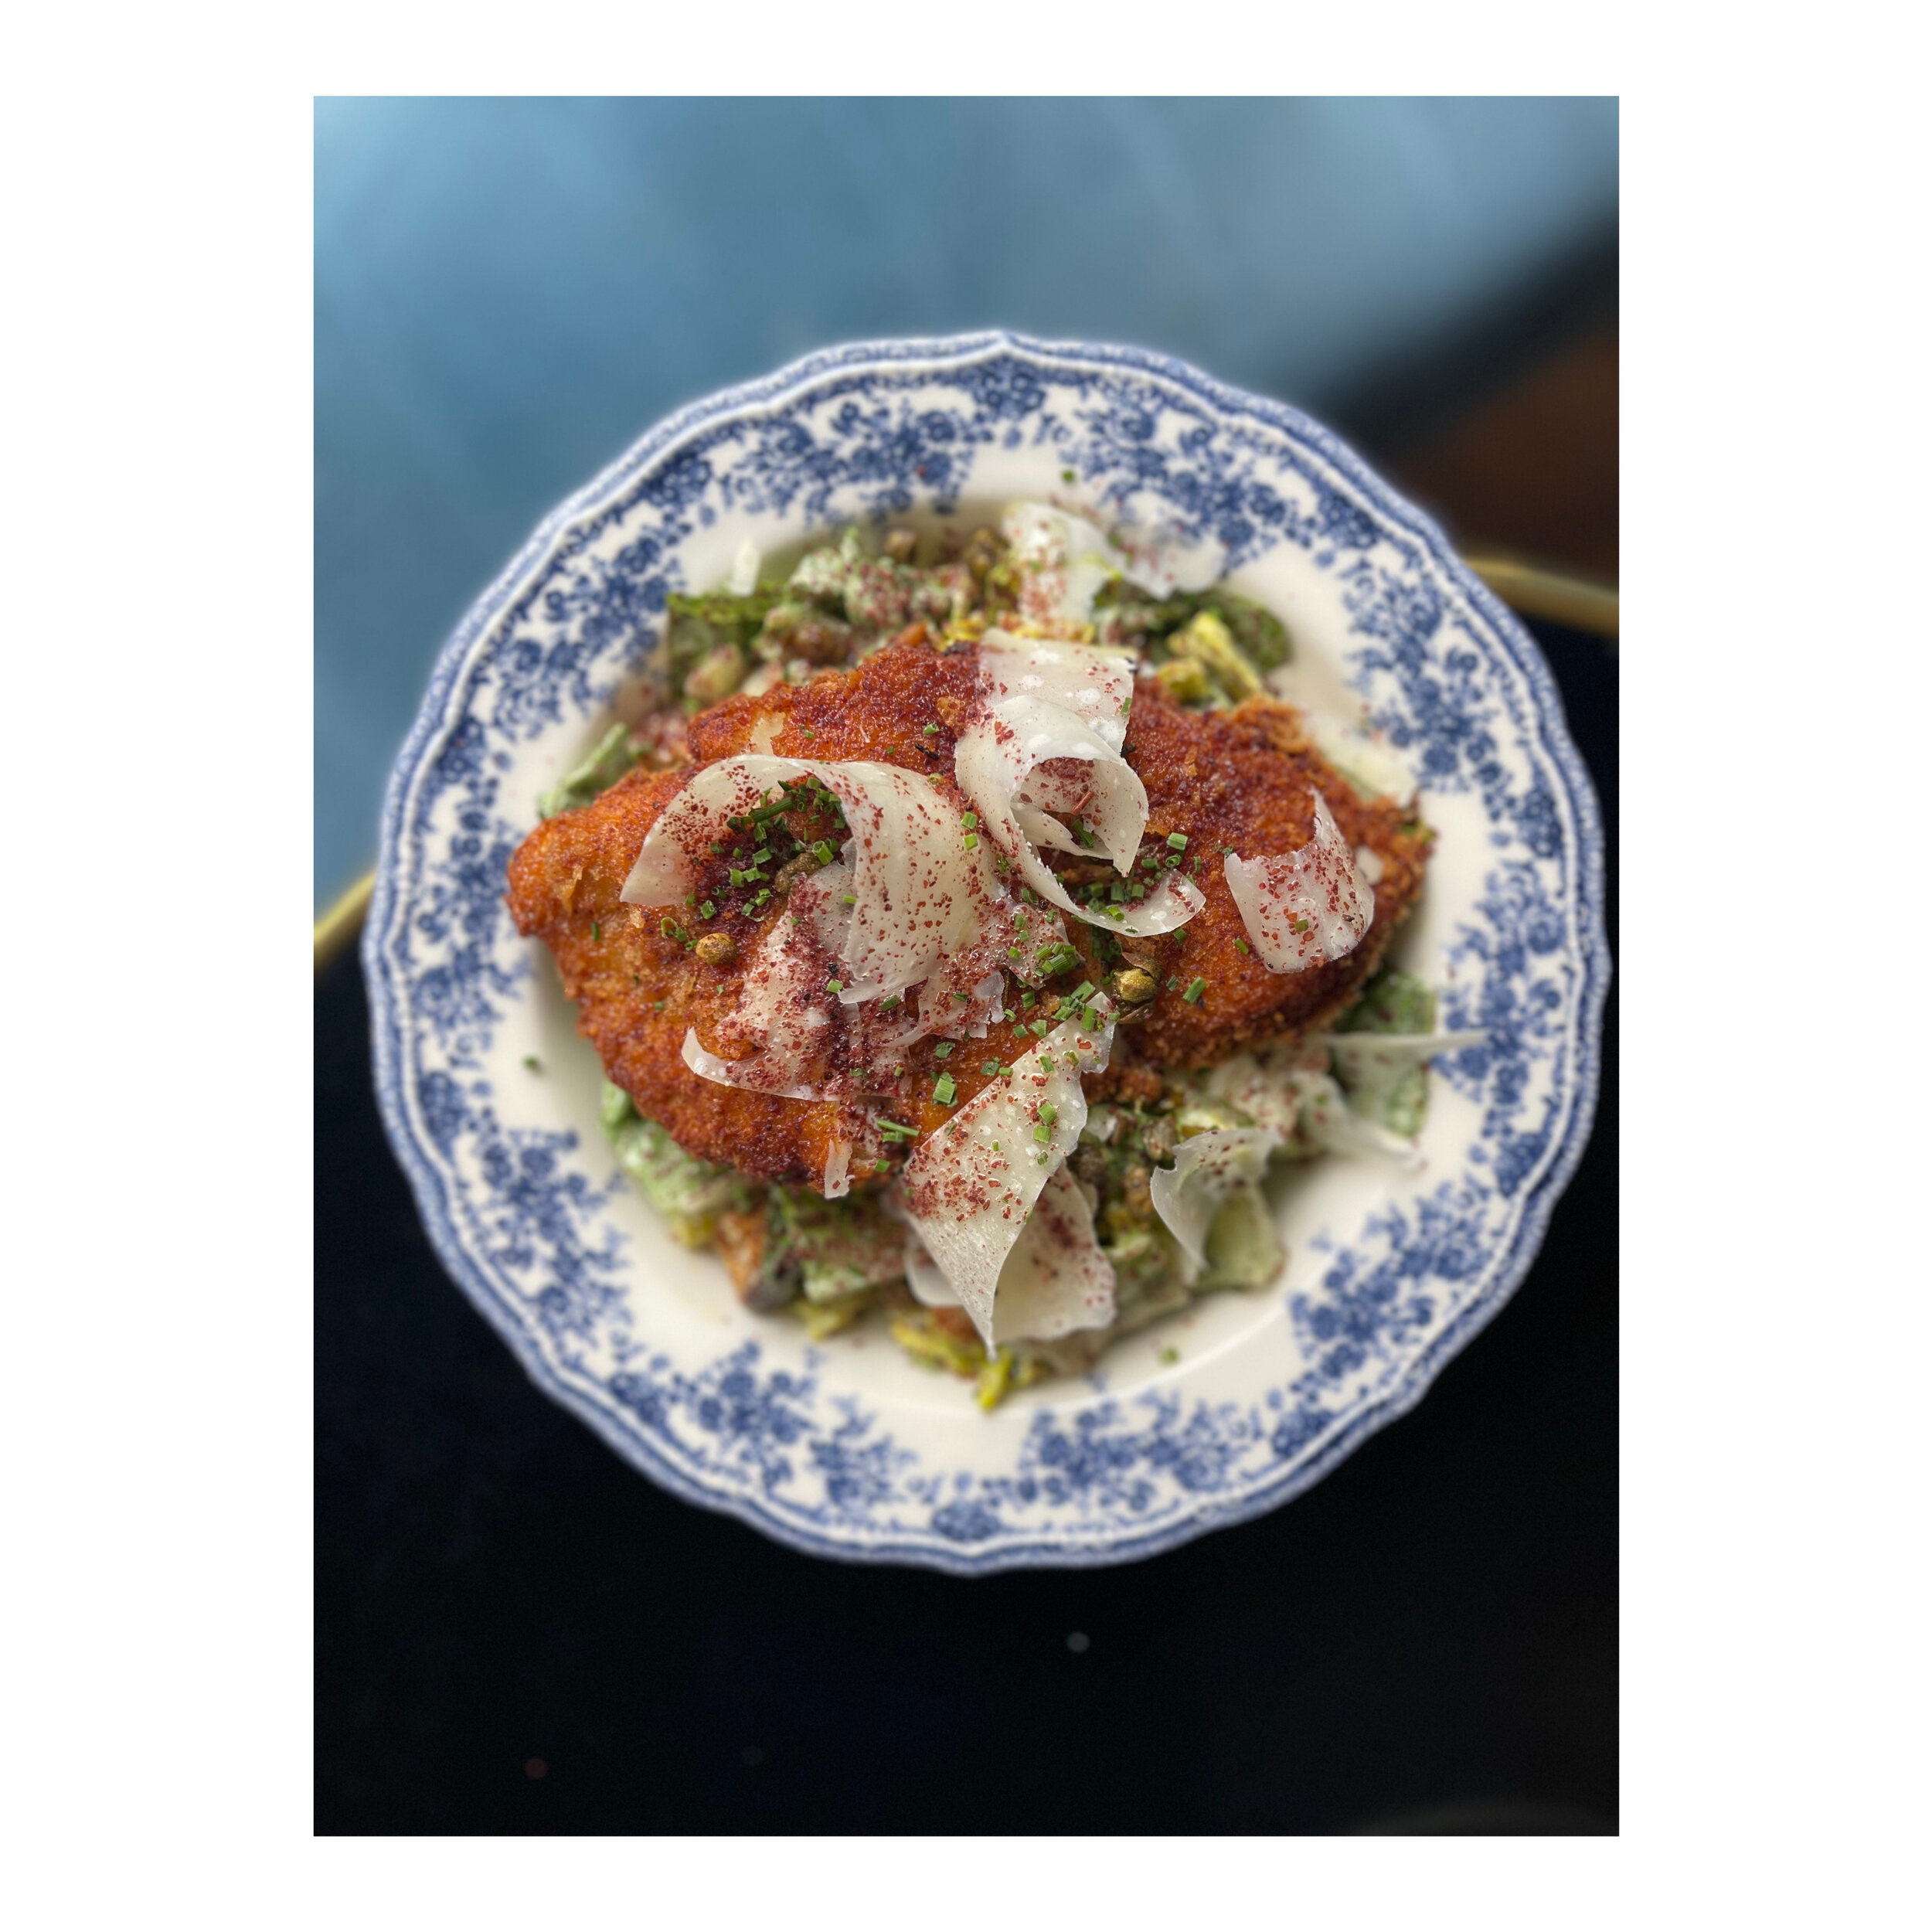 Cesar Schnitzel salad : comme la classique, en mieux☀️⁣
.⁣
.⁣
.⁣
#bagnard #kosherfood #gourmandises#cestmeilleurquandcestbon #parisfoodies#mediterraneanfood #pariseats #saladecompos&eacute;e #saladecesar #schnitzel  #frais